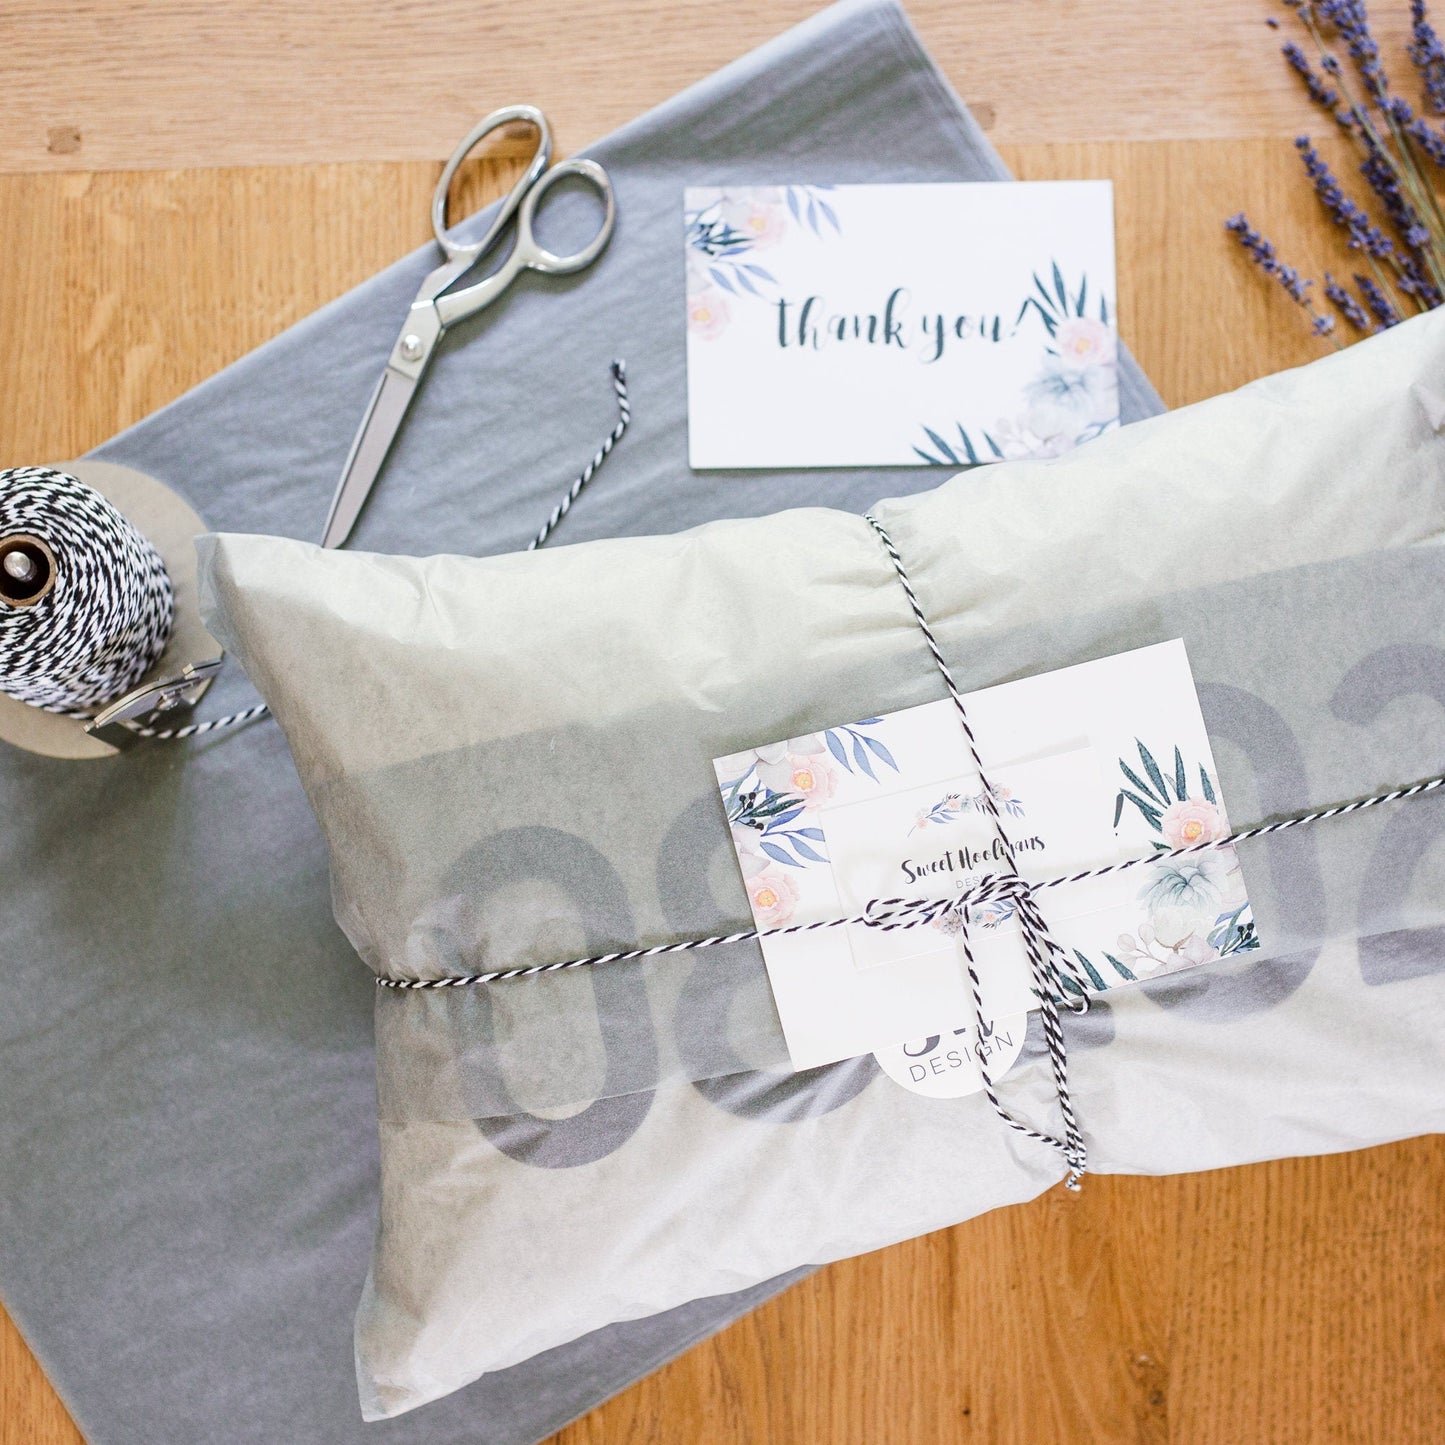 Magnolia Wreath | Personalized Pillows | Watercolor Magnolia | Rustic Home Decor | Decorative Pillows | Rustic Decor | Farmhouse Pillow